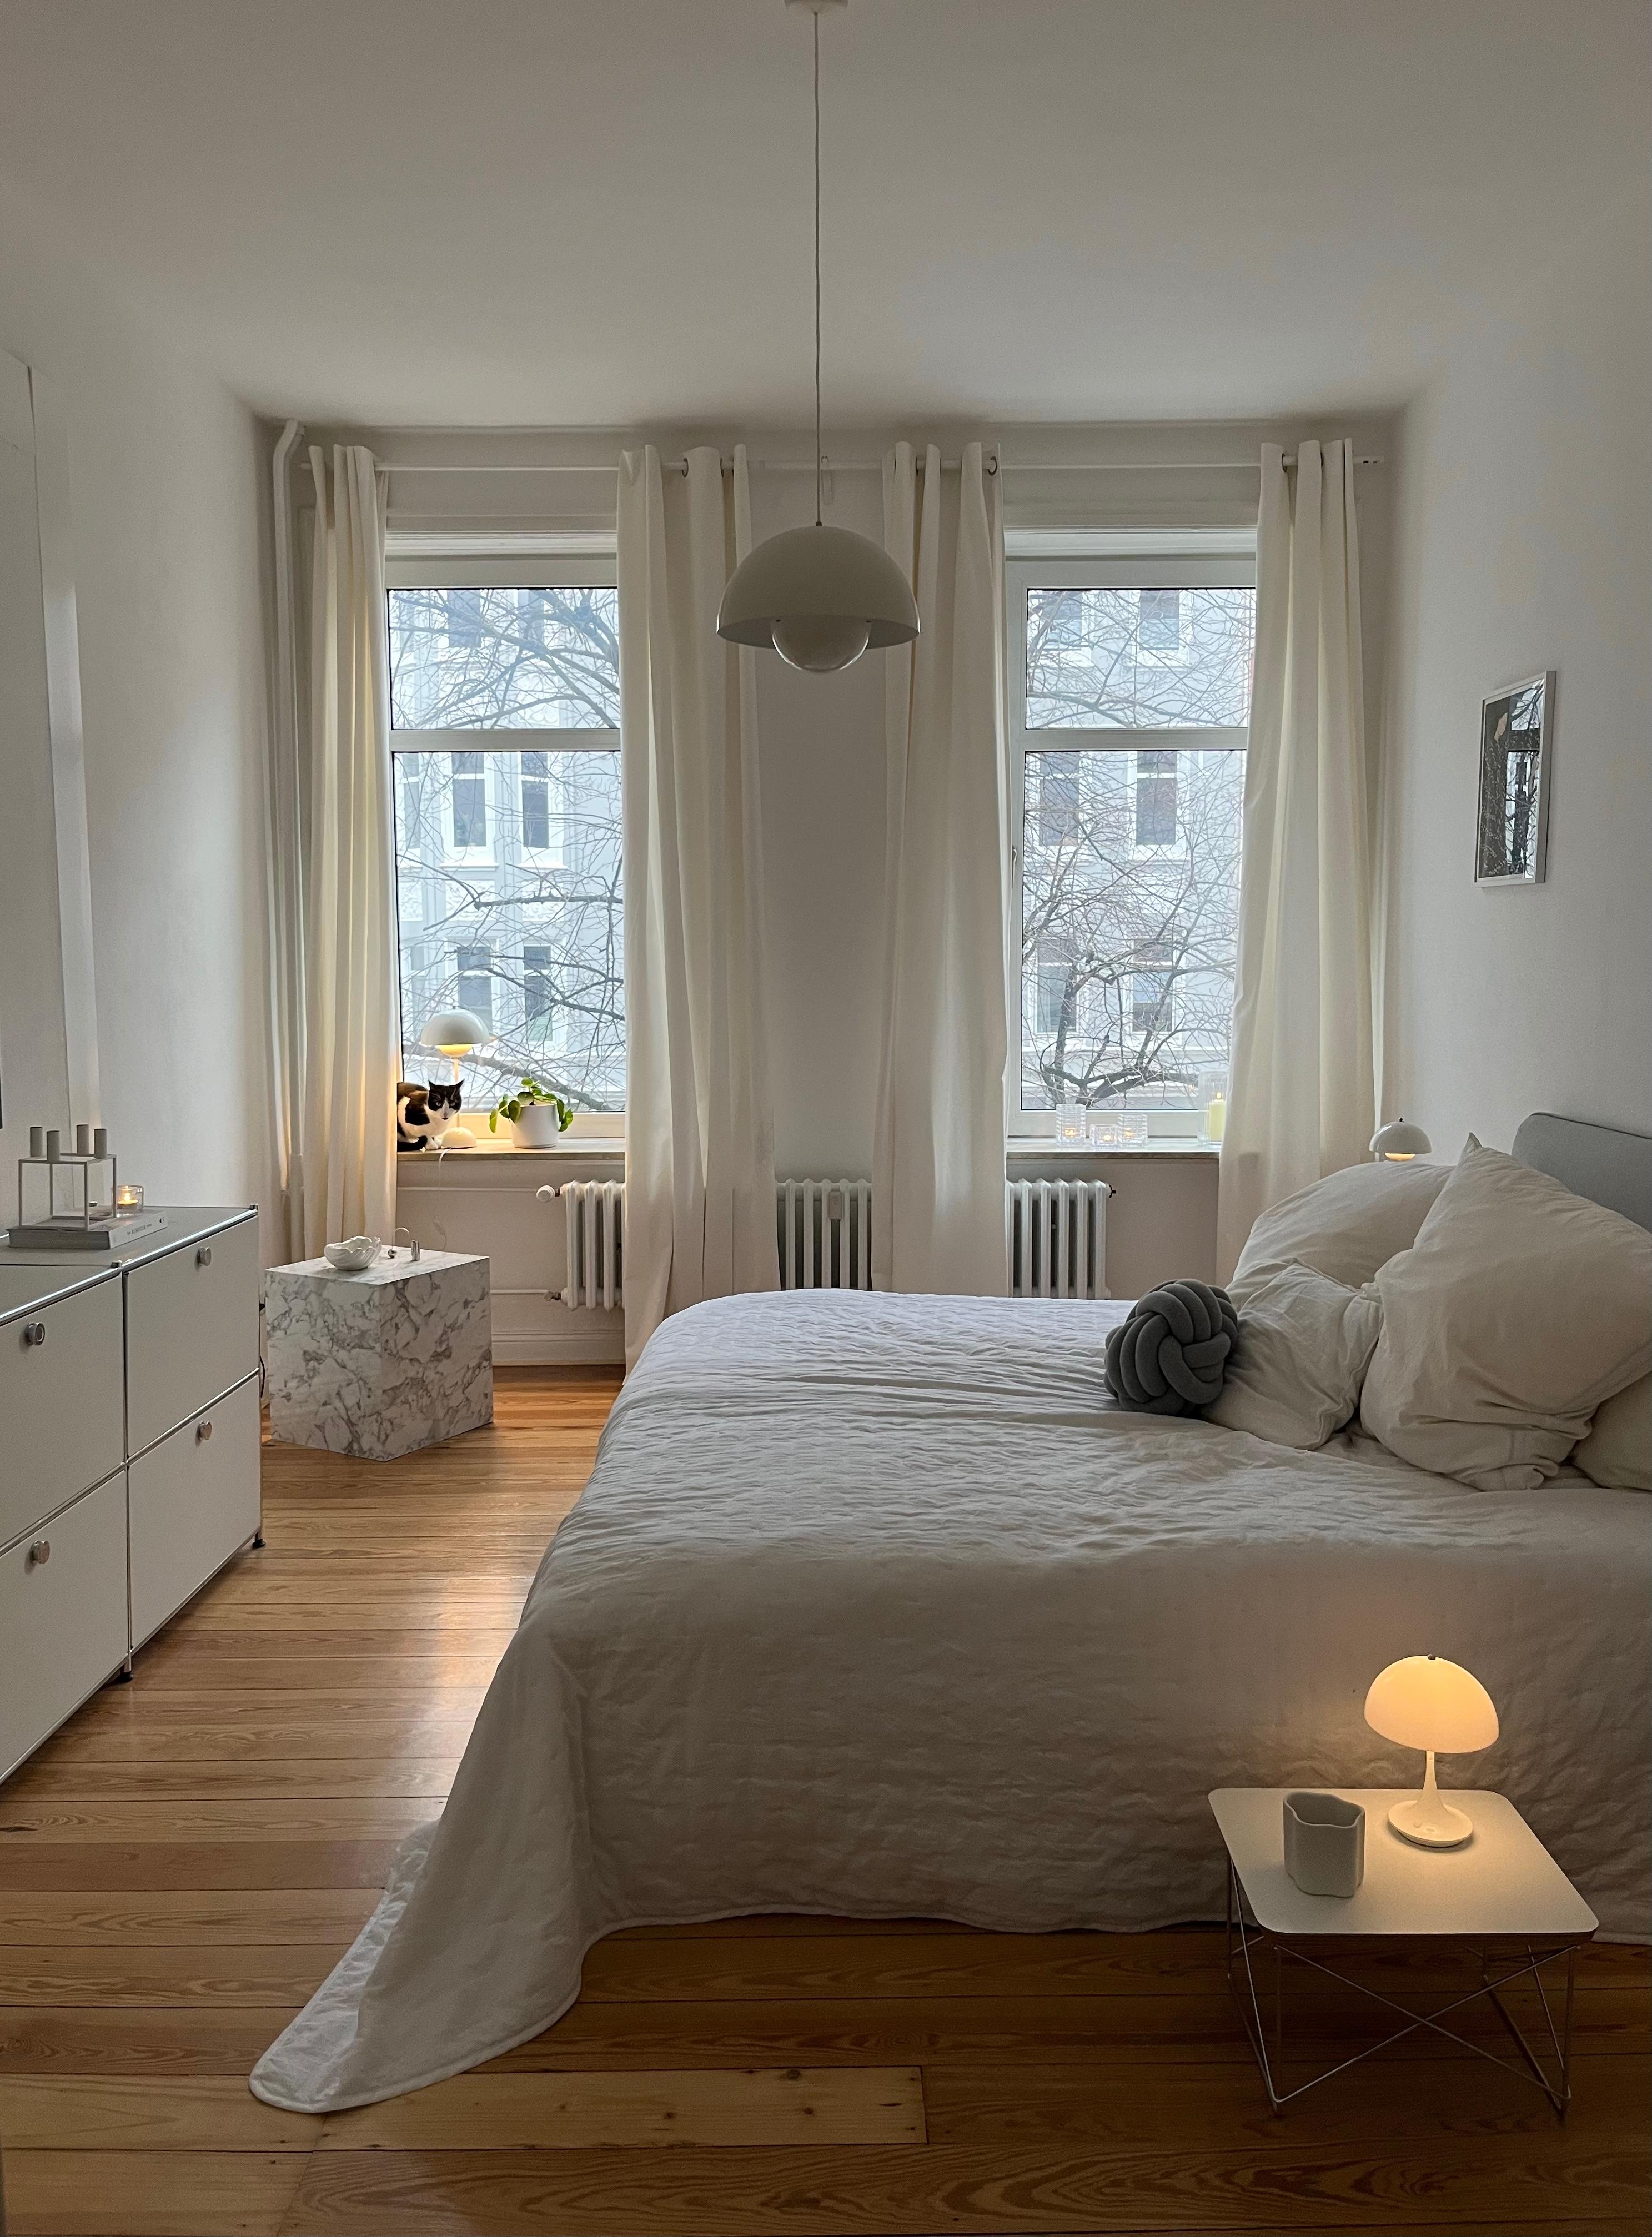 #schlafzimmerdesign #cozybedroom #skandinavischwohnen #altbauwohnung #danishdesign